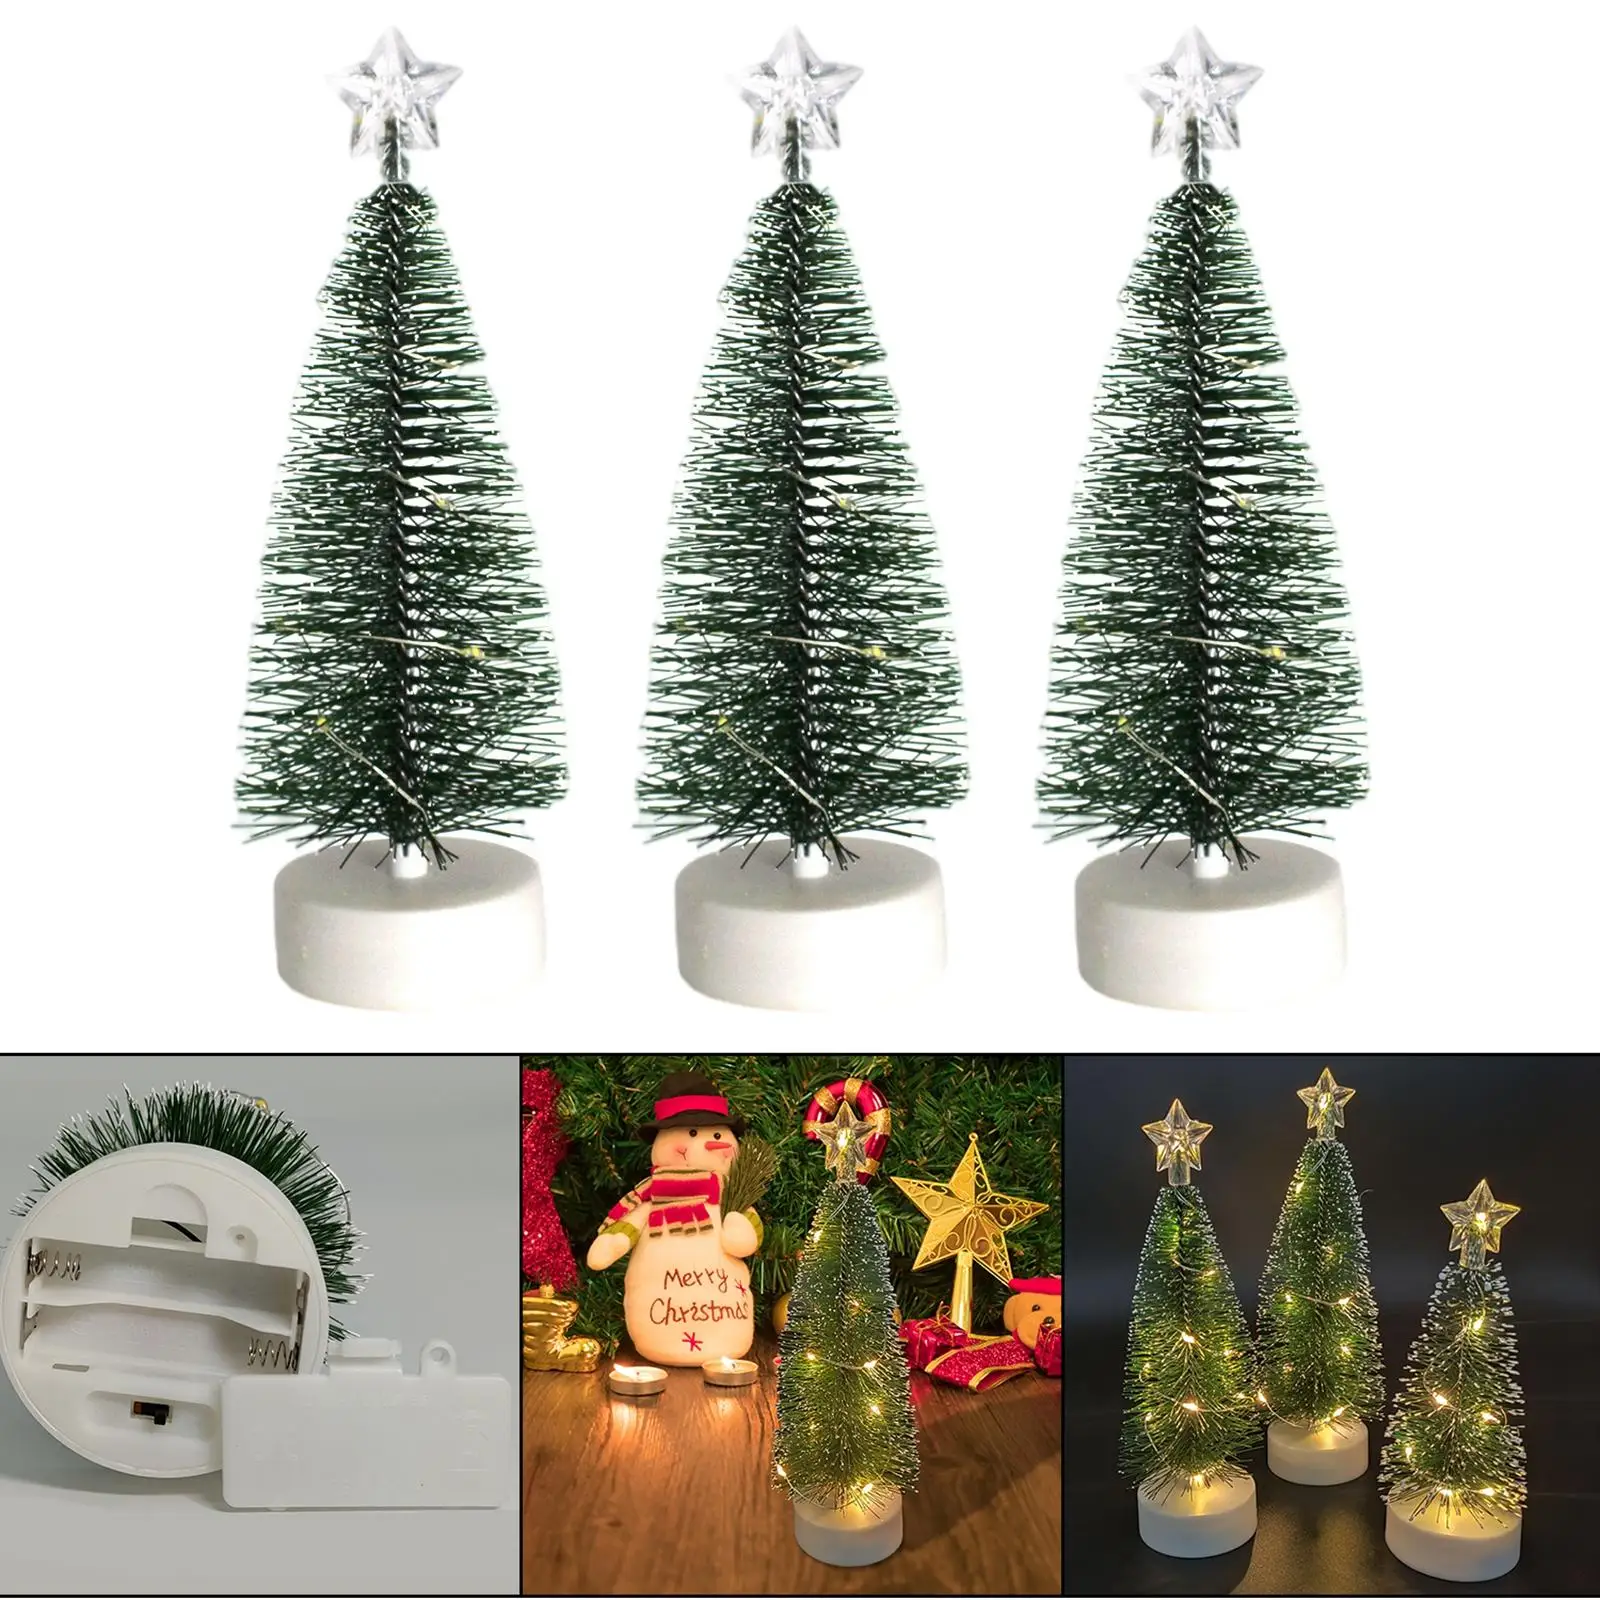 Mini Sisal Christmas Tree With LED Lights Small Pine Tree Table Xmas Home Decor 